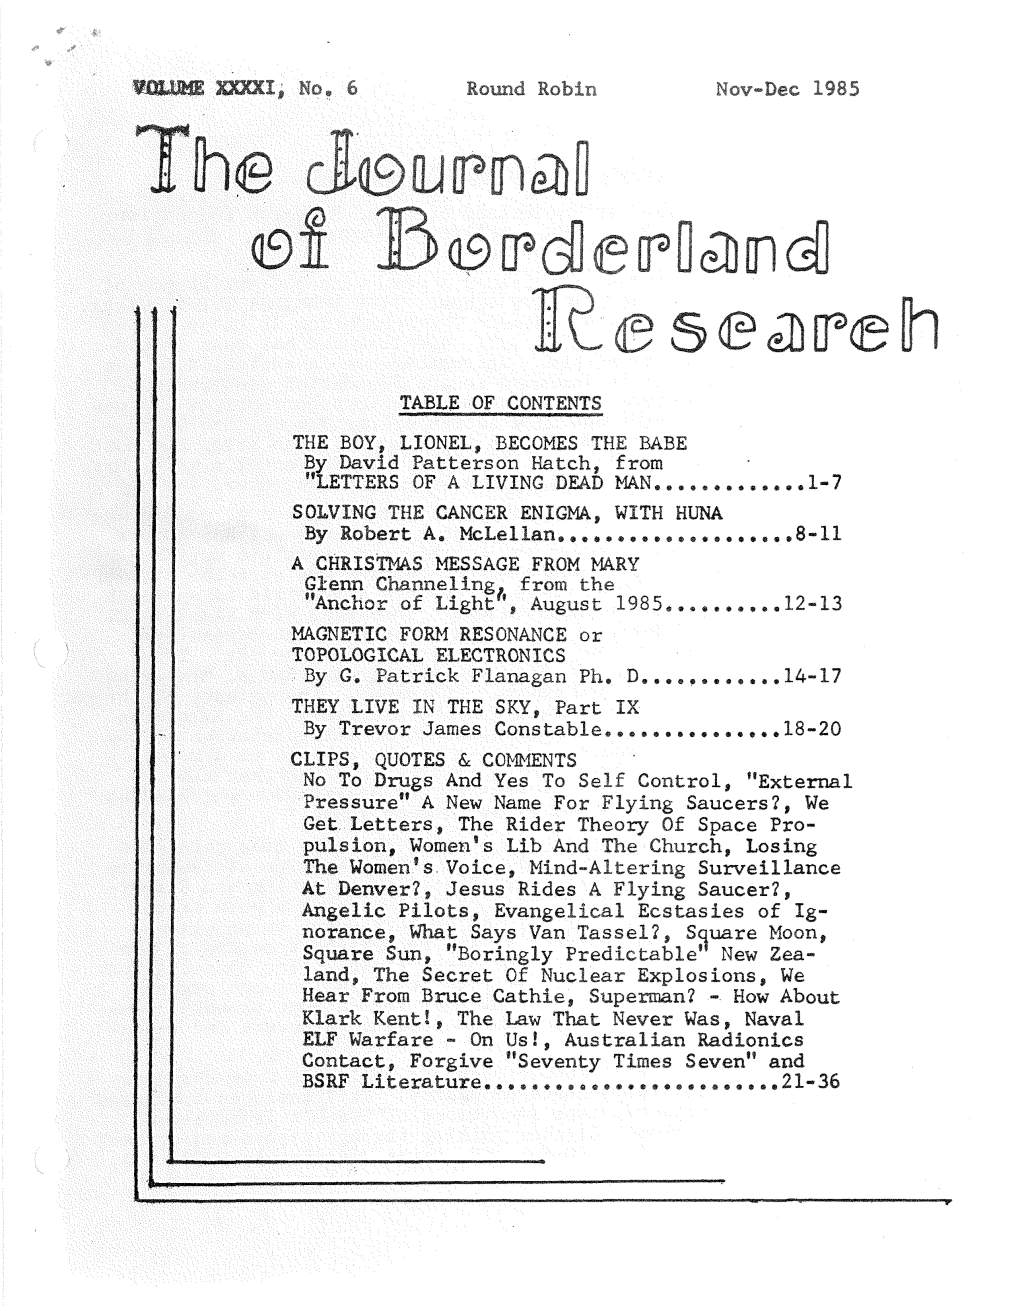 Journal of Borderland Research V41 N6 Nov-Dec 1985